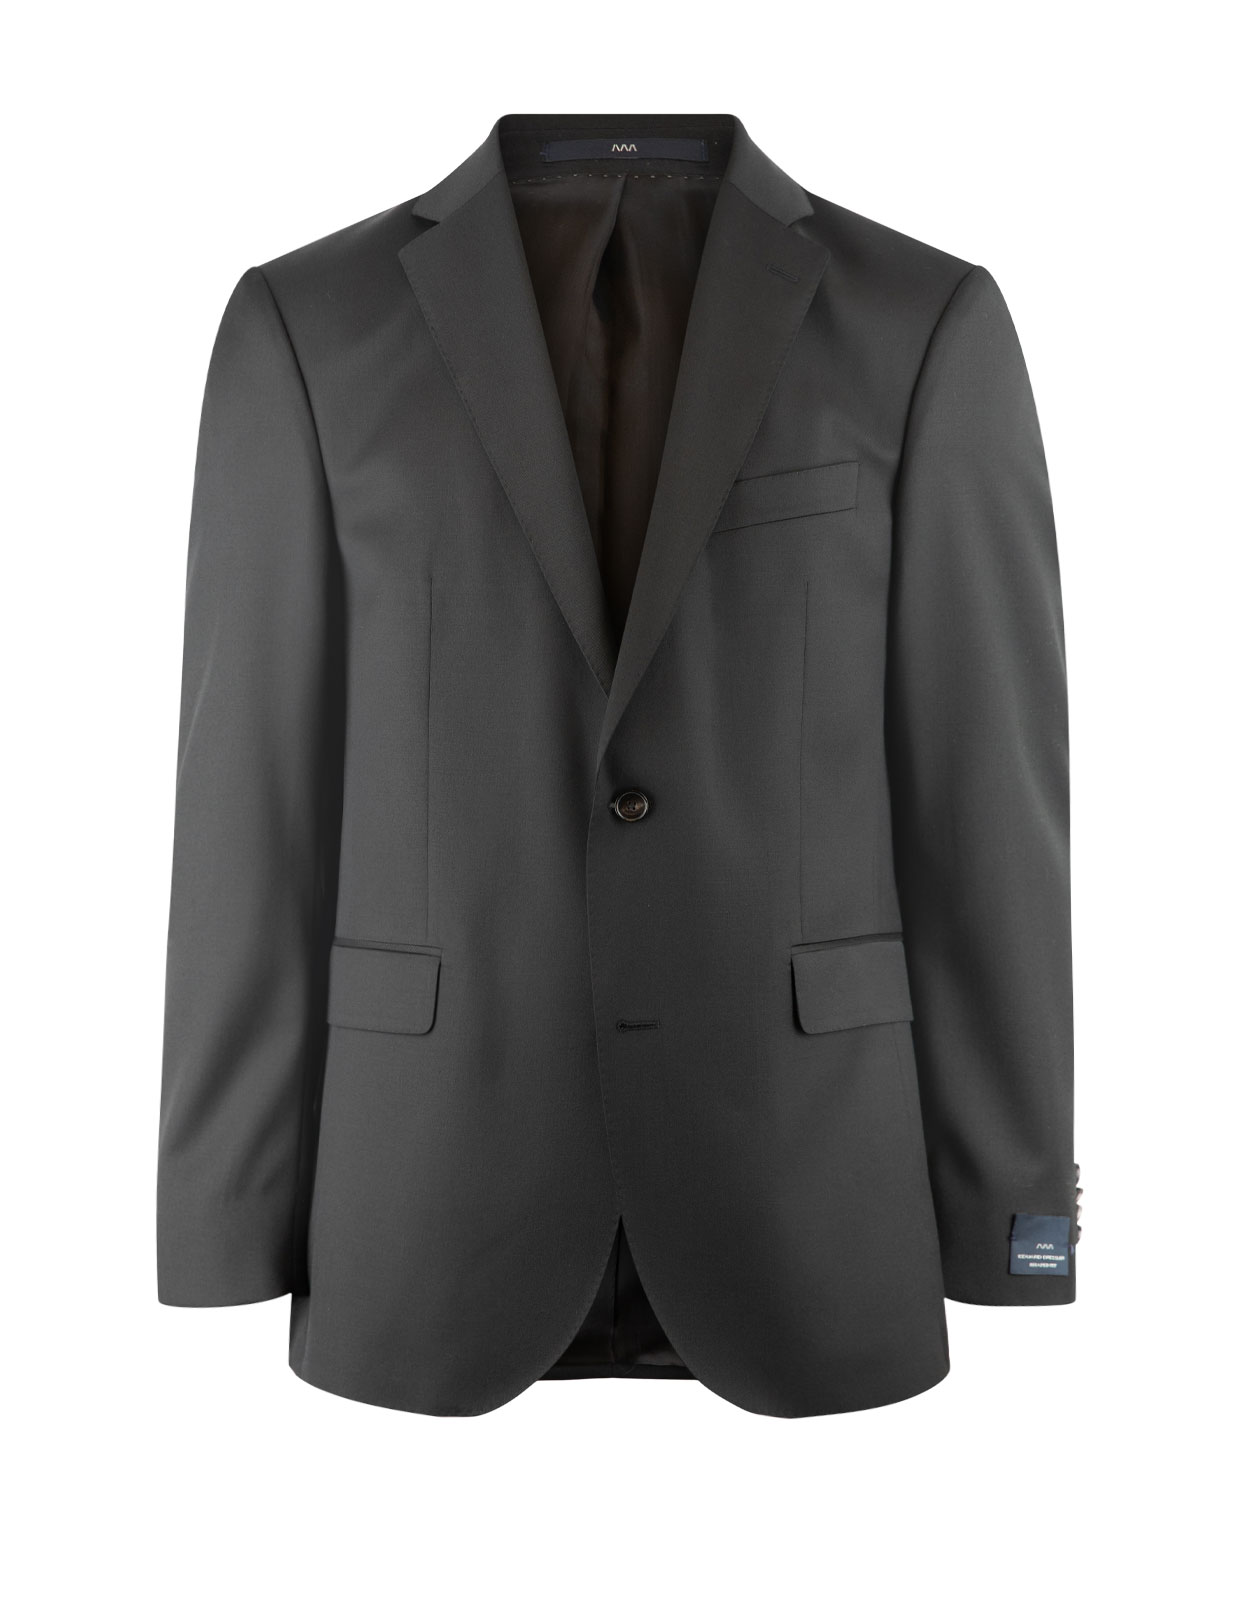 Edson Suit Jacket 110's Wool Mix & Match Black Stl 58